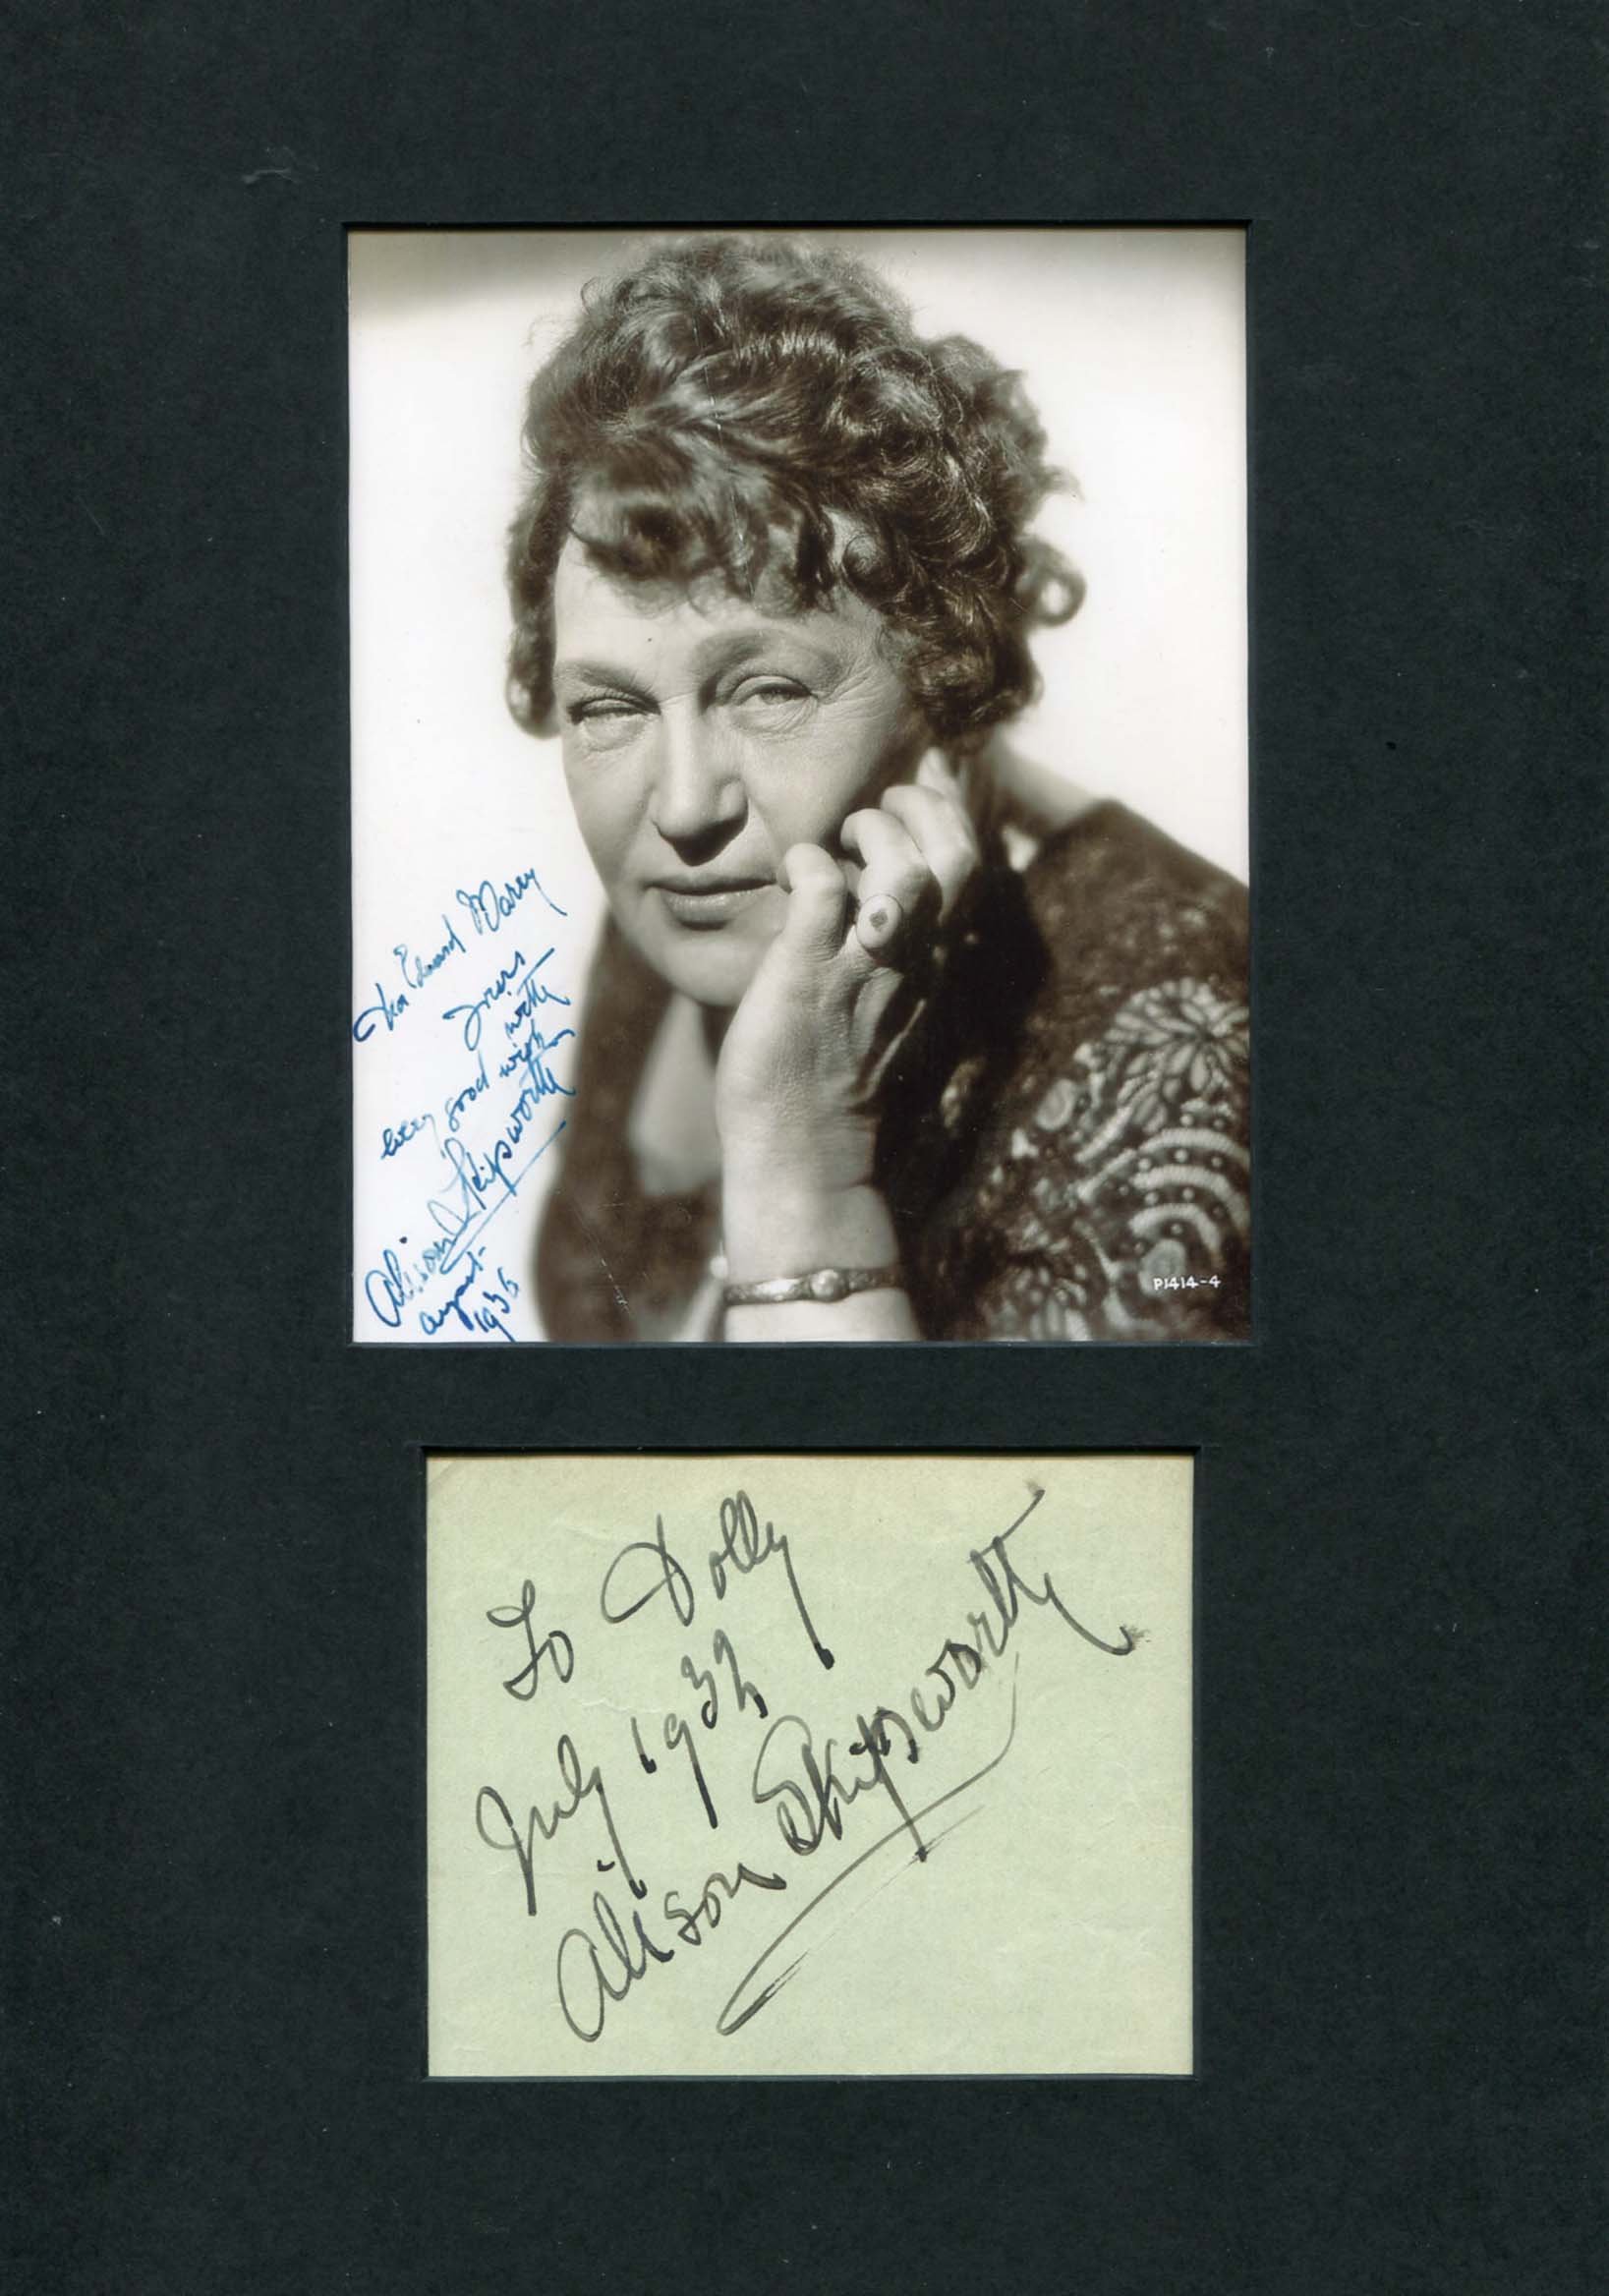 Skipworth, Alison autograph